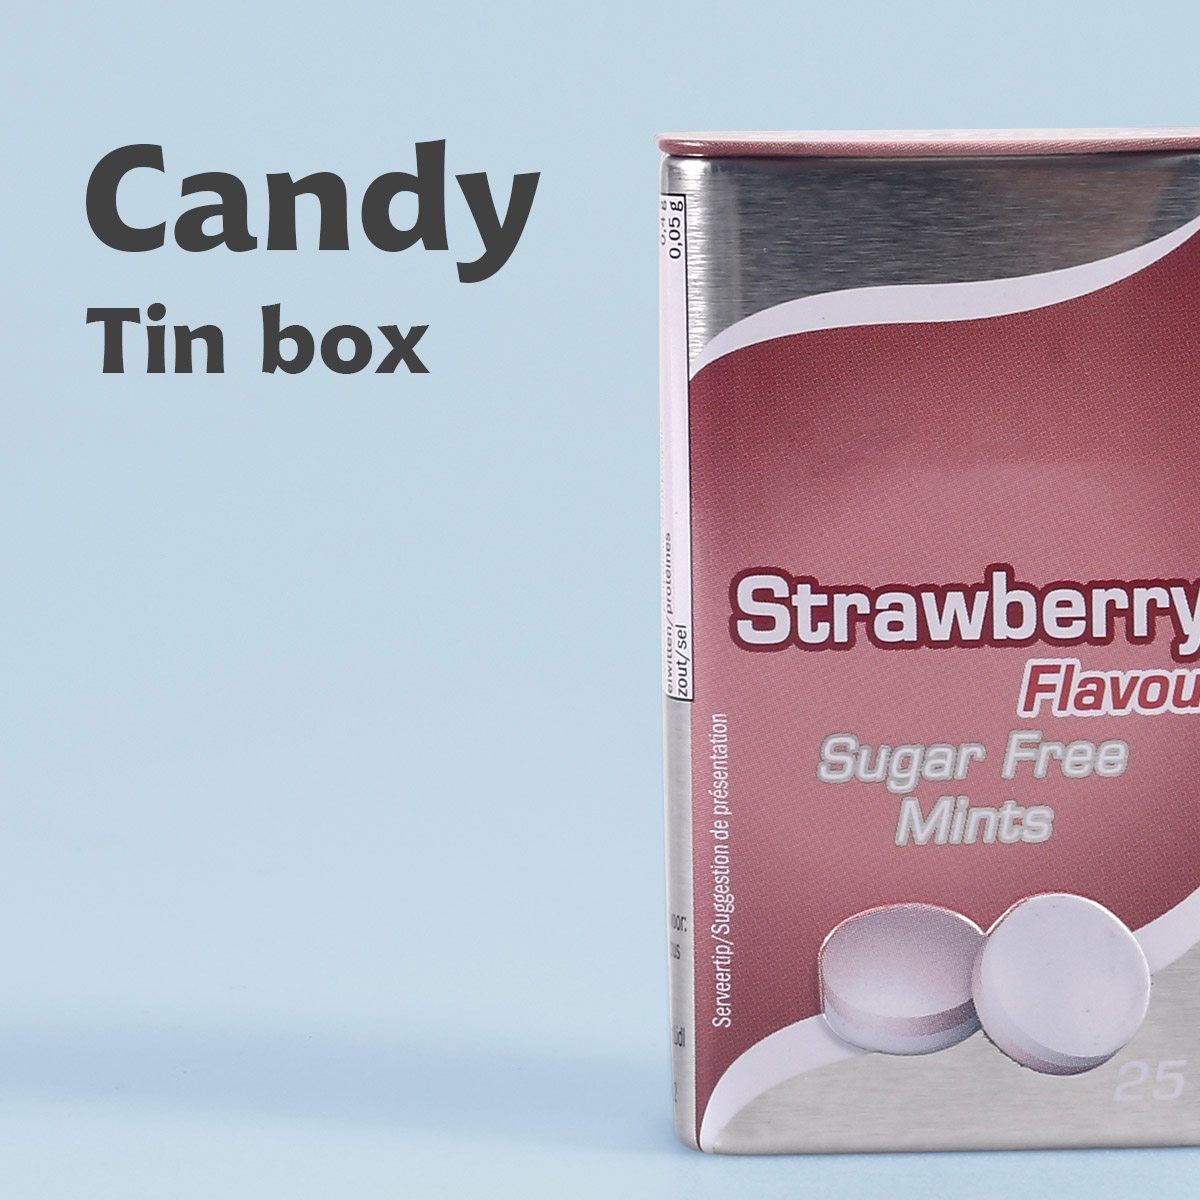 Candy Tin box